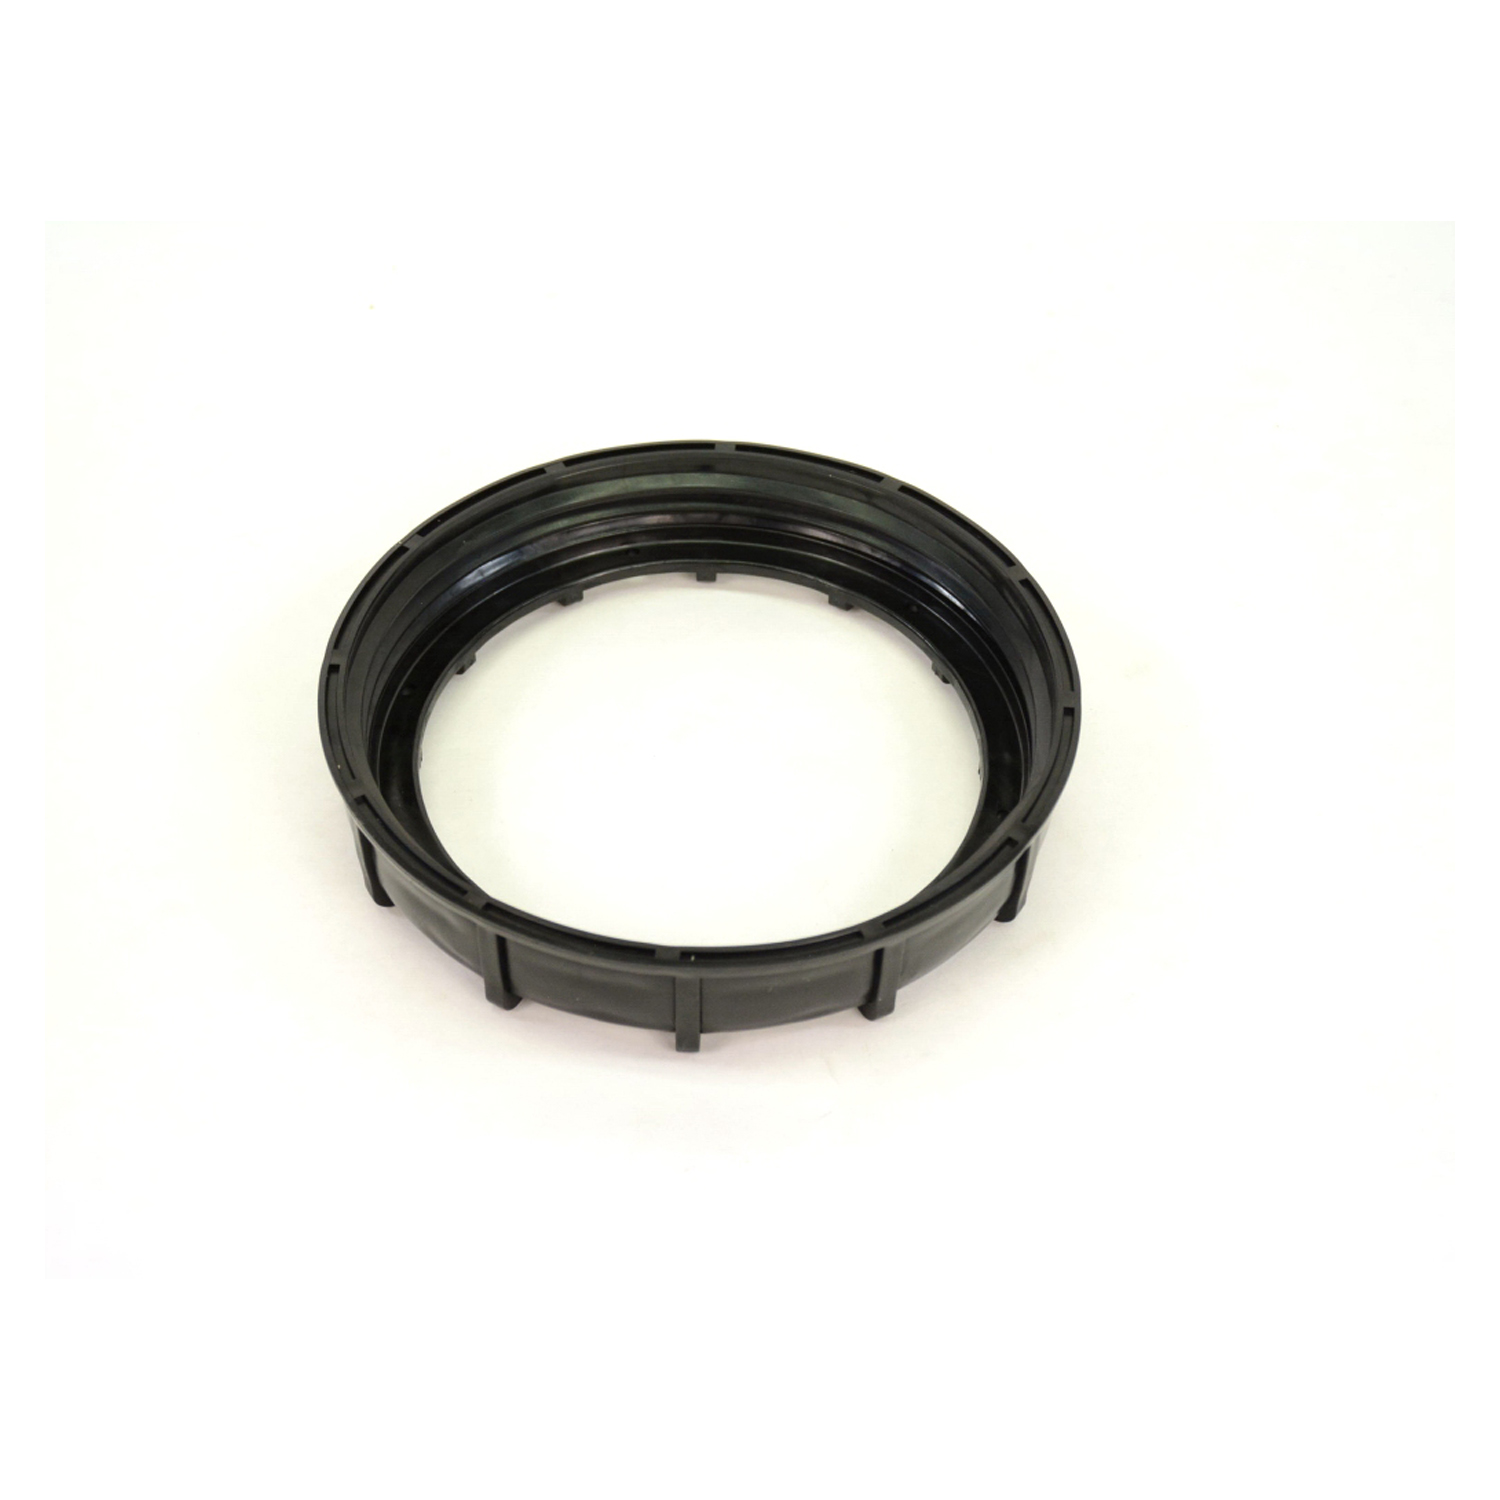 MOPAR PARTS - Fuel Tank Lock Ring - MOP 52005389